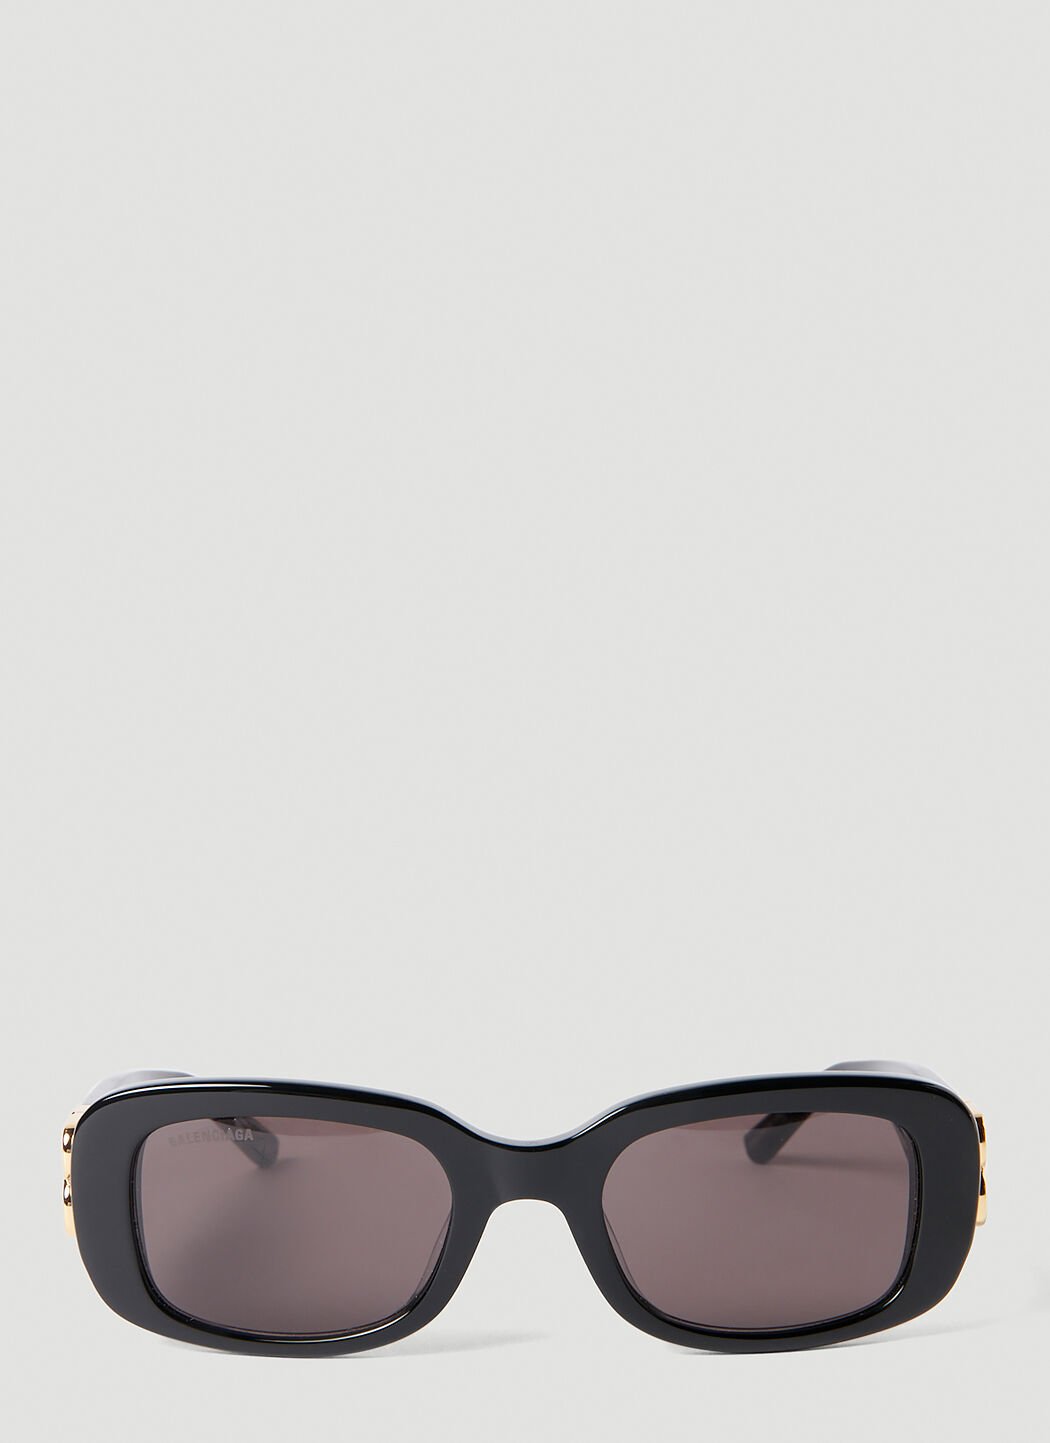 Vivienne Westwood Dynasty D-Frame Sunglasses Black vvw0254048